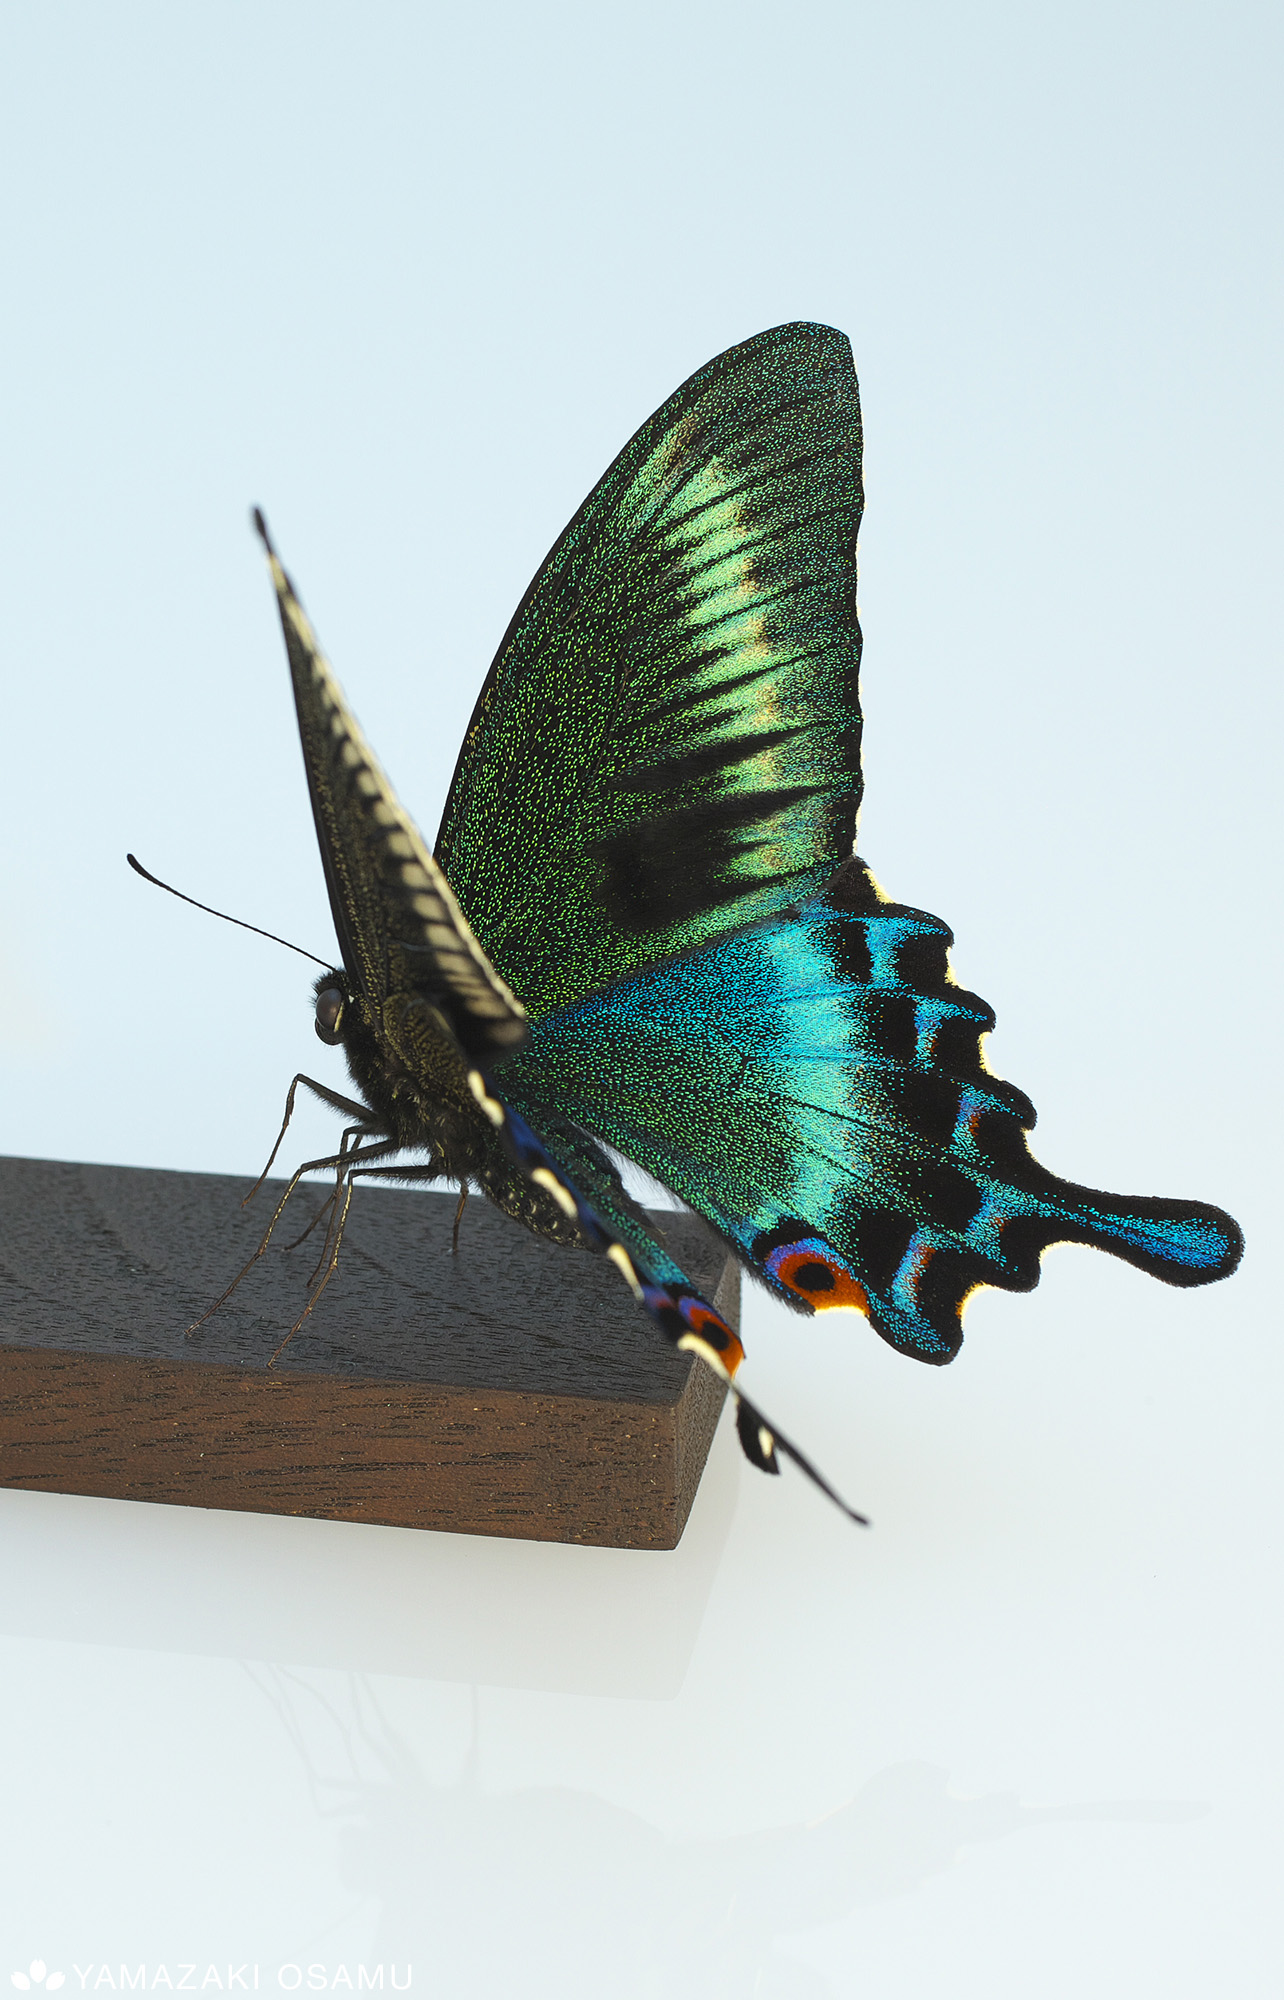 山﨑 理 Yamazaki Osamu ピンを使わない蝶の標本を作っています あつ森に出てきたのを集めてみました 立体展翅 Butterflyspecimen T Co Dixgimzdiy Twitter